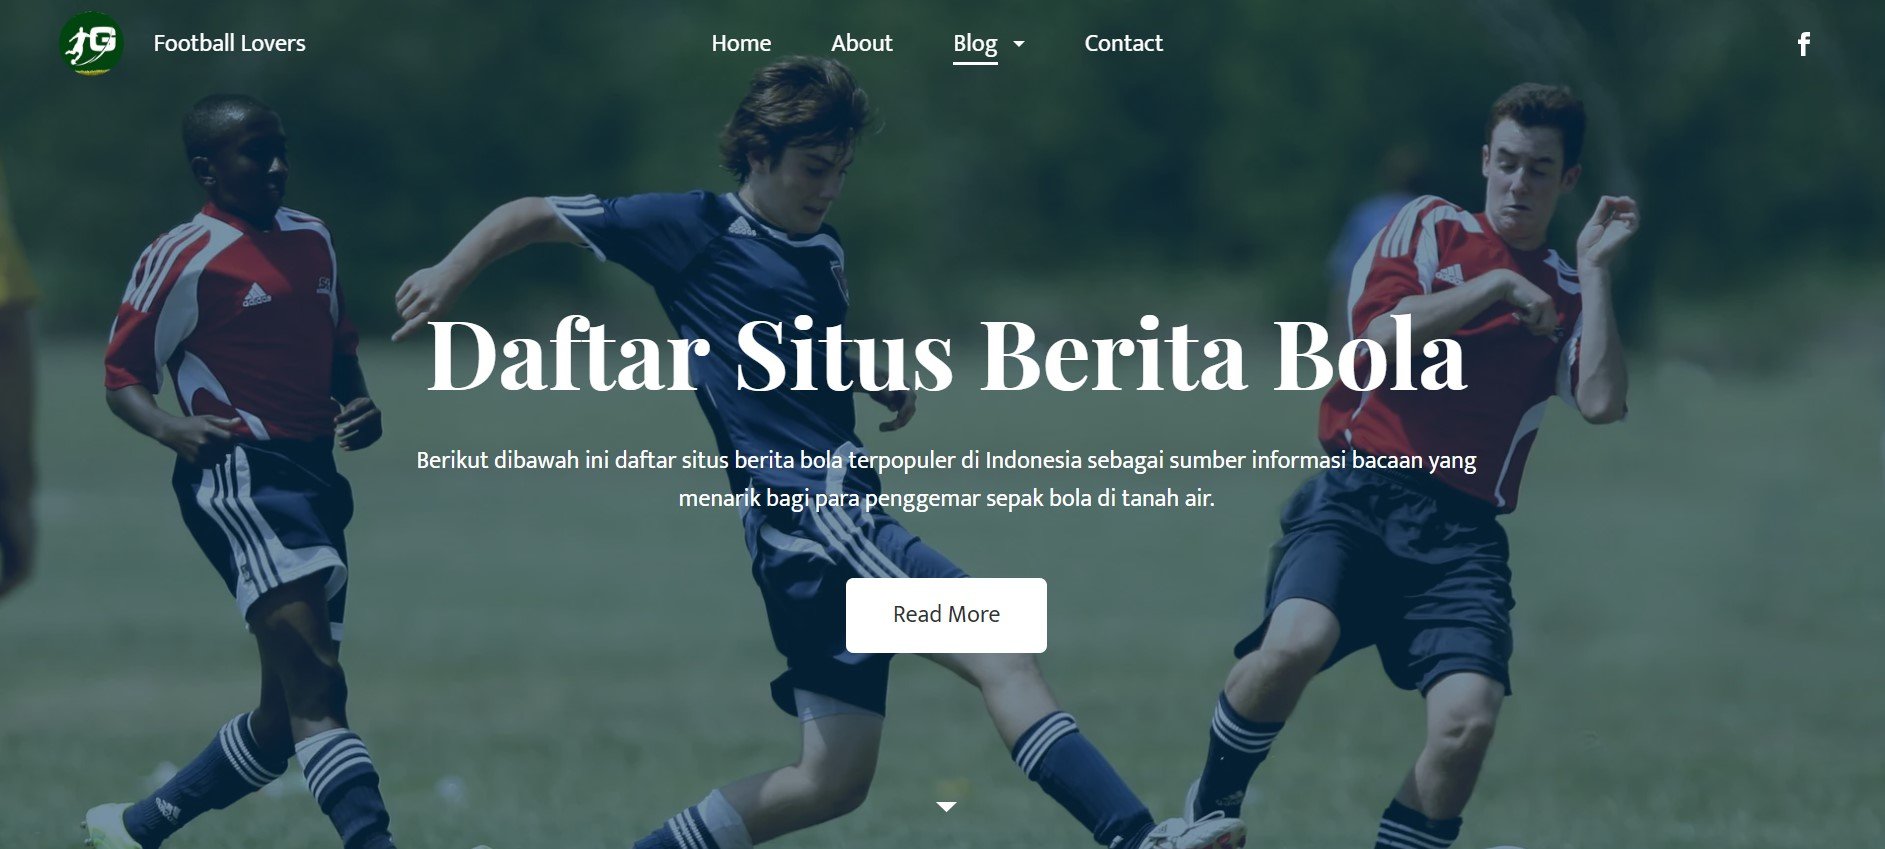 Daftar berita bola terpopuler di Indonesia